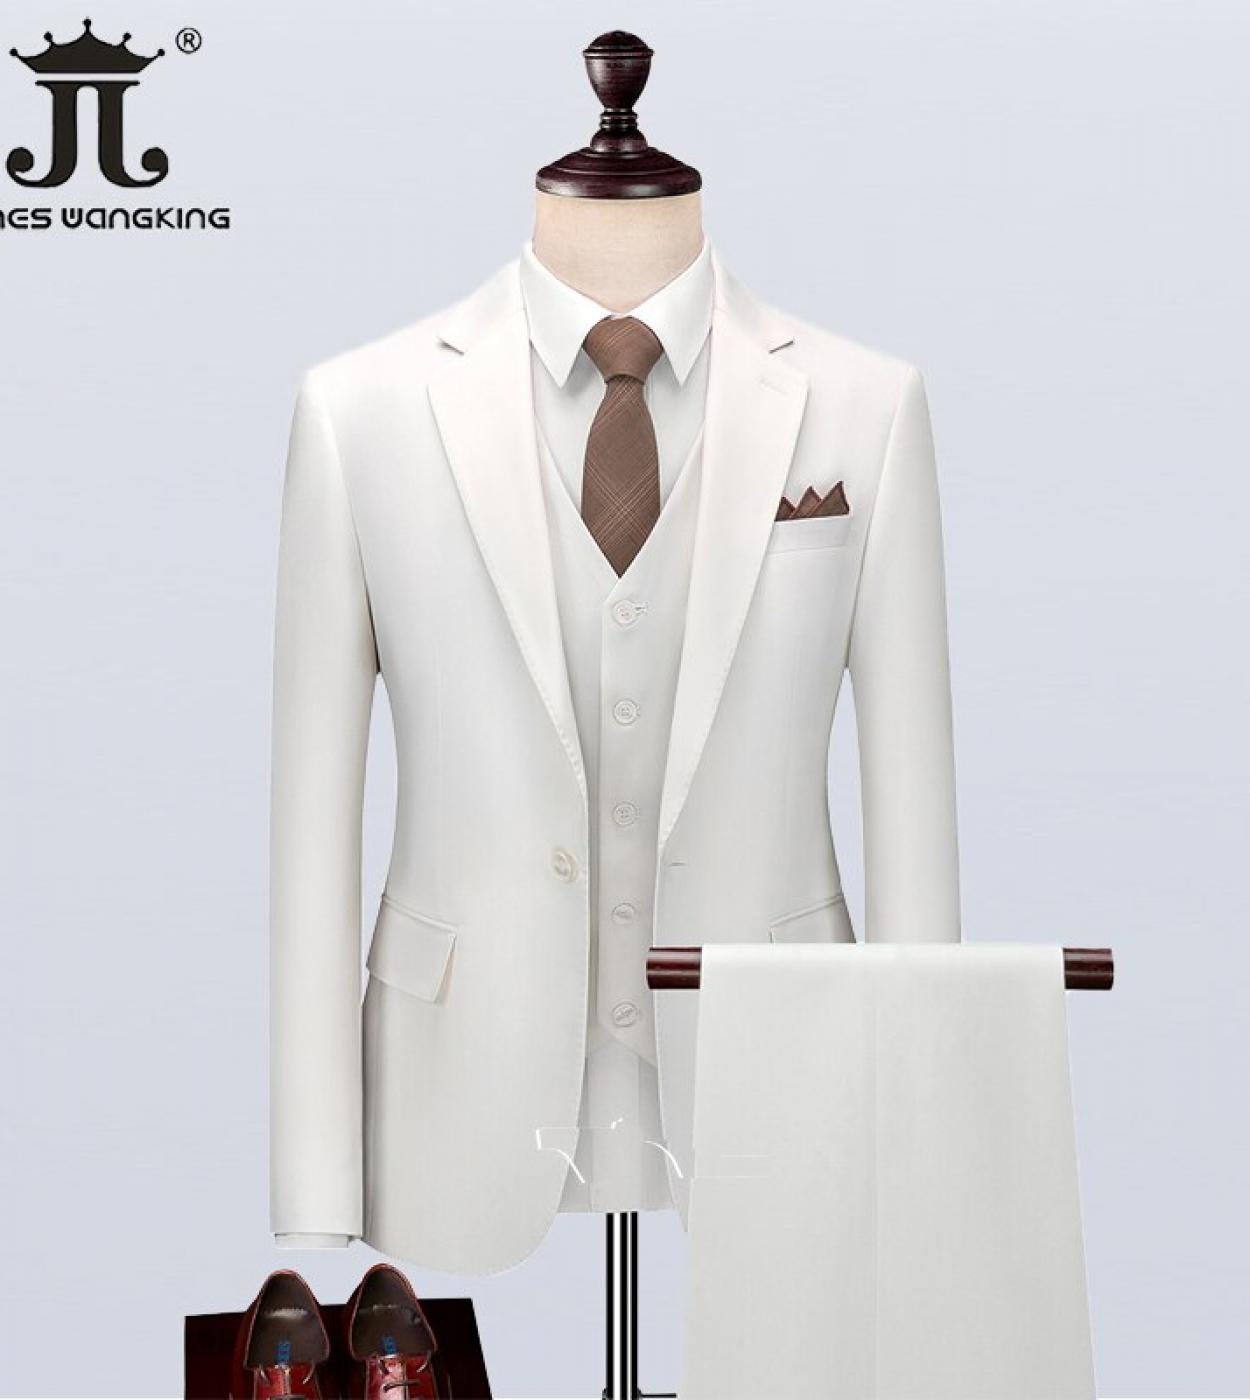  בלייזר  גופיה  מכנסיים  בוטיק צבע אחיד חליפת גברים שמלת כלה חתן חזה יחיד לבן 3 יחידות עבודה עסקית